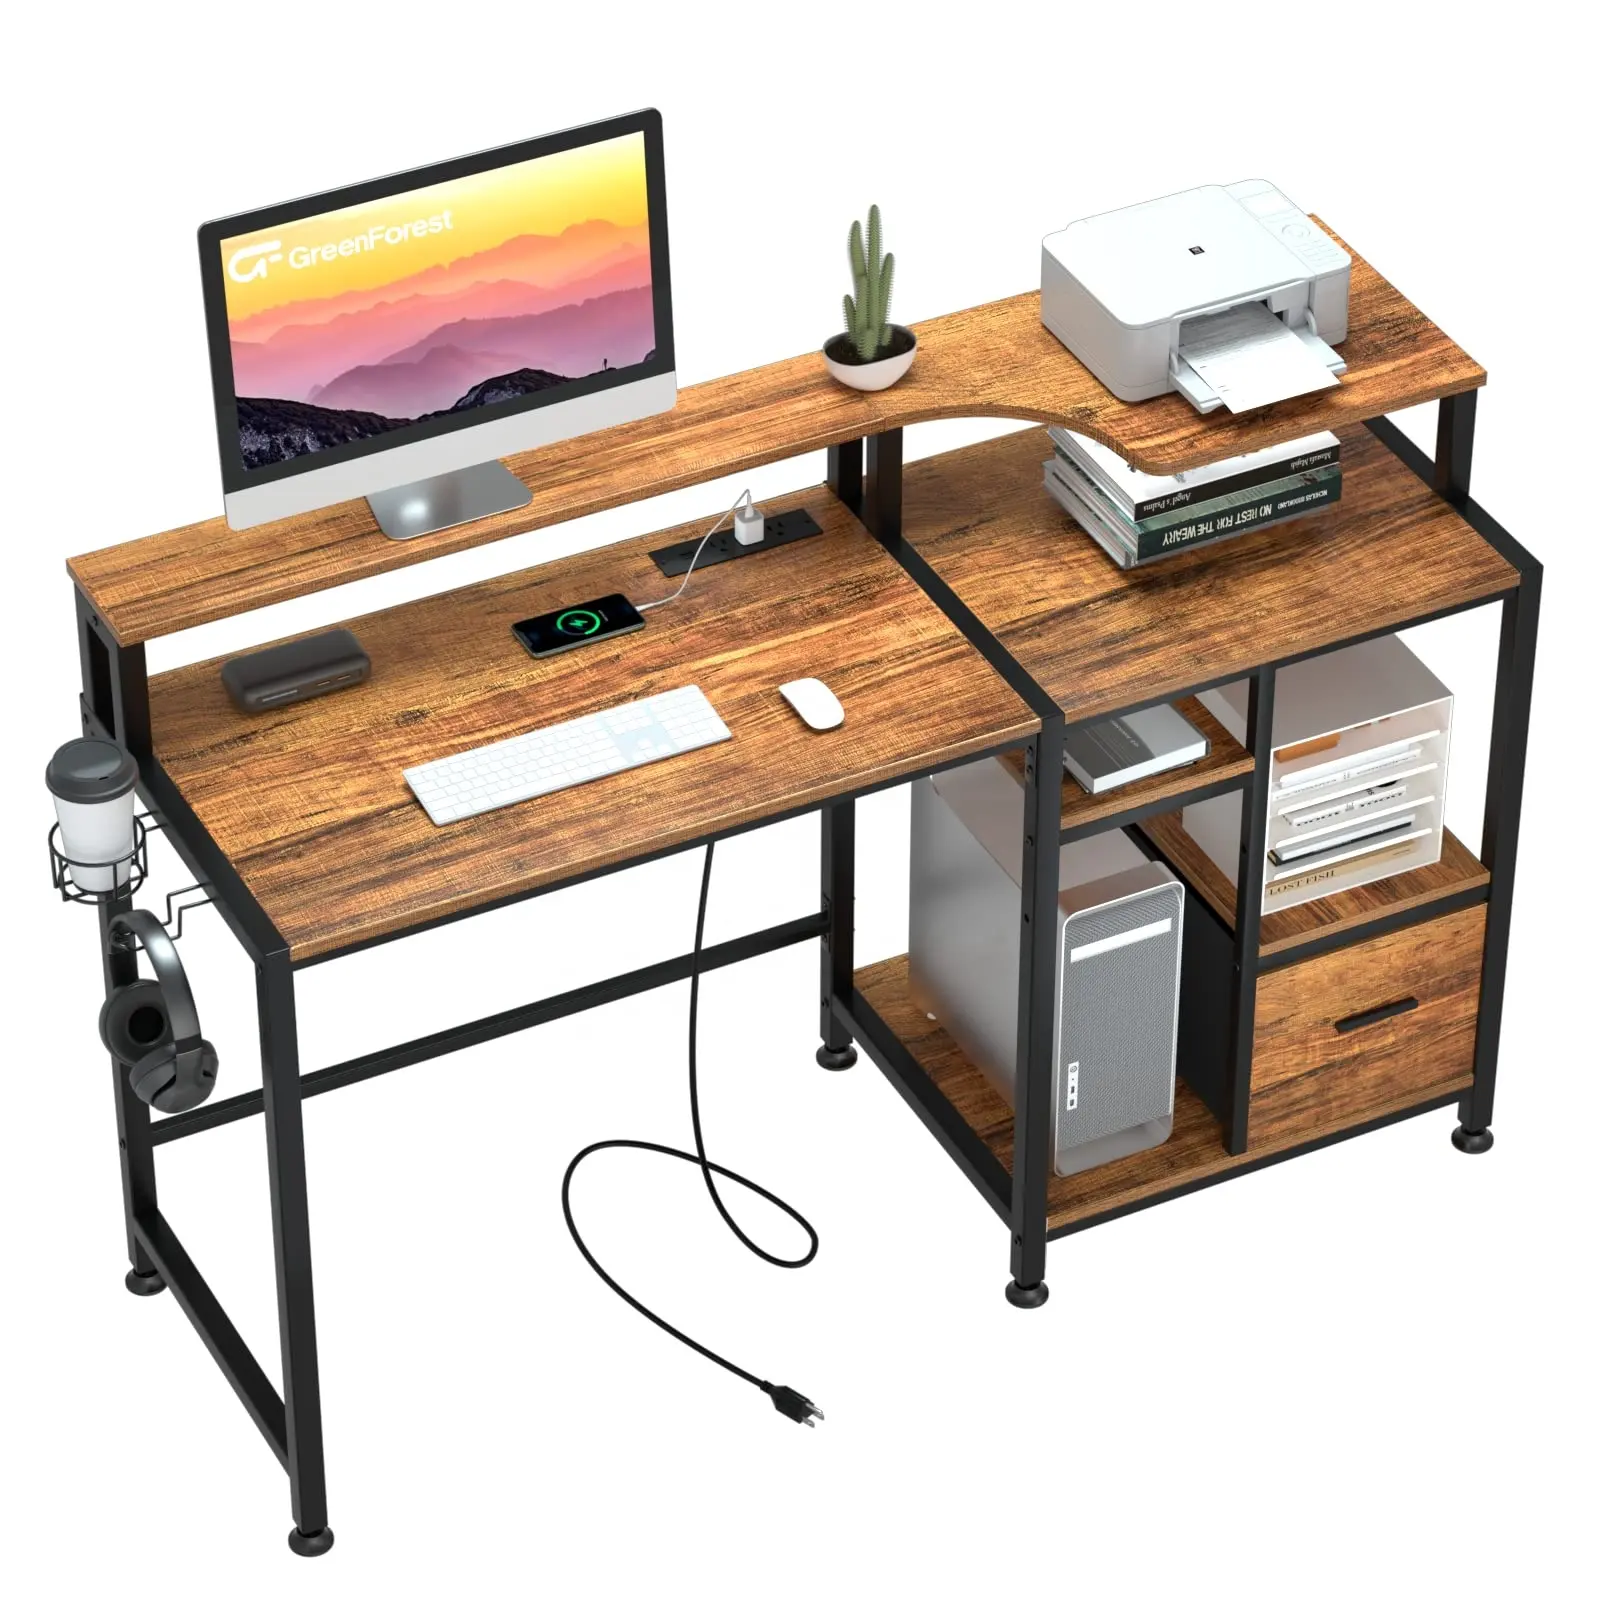 Escritorio moderno para ordenador de oficina con cajones y estación de carga, escritorio de madera con soporte para impresora y soporte para monitor